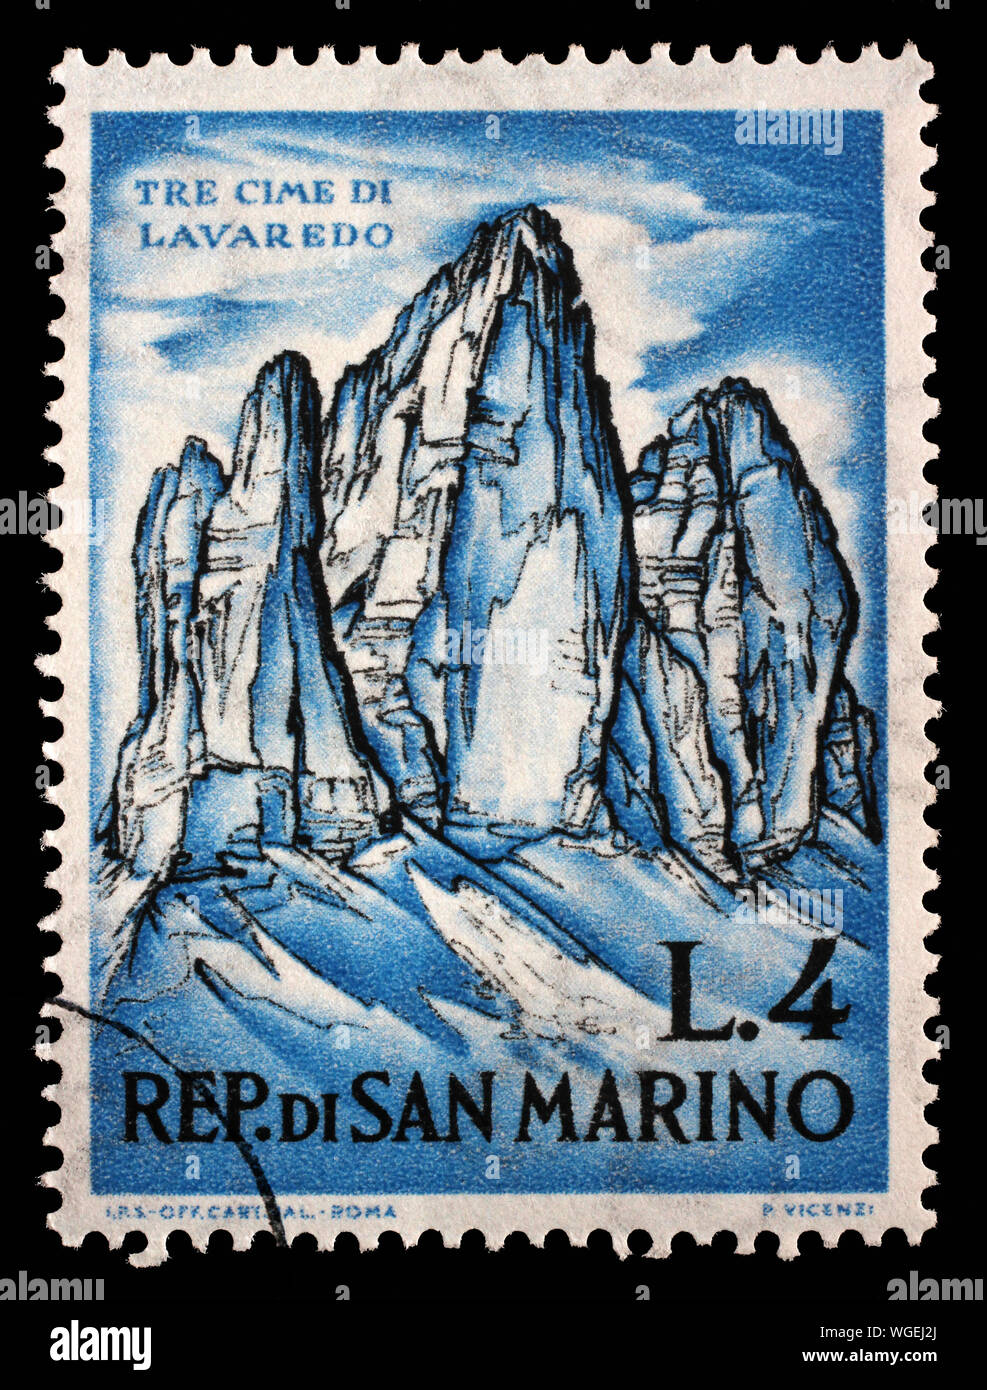 Stampigliatura rilasciata a San Marino mostra Tre Cime di Lavaredo e dedicato allo scialpinismo, 1962 circa. Foto Stock